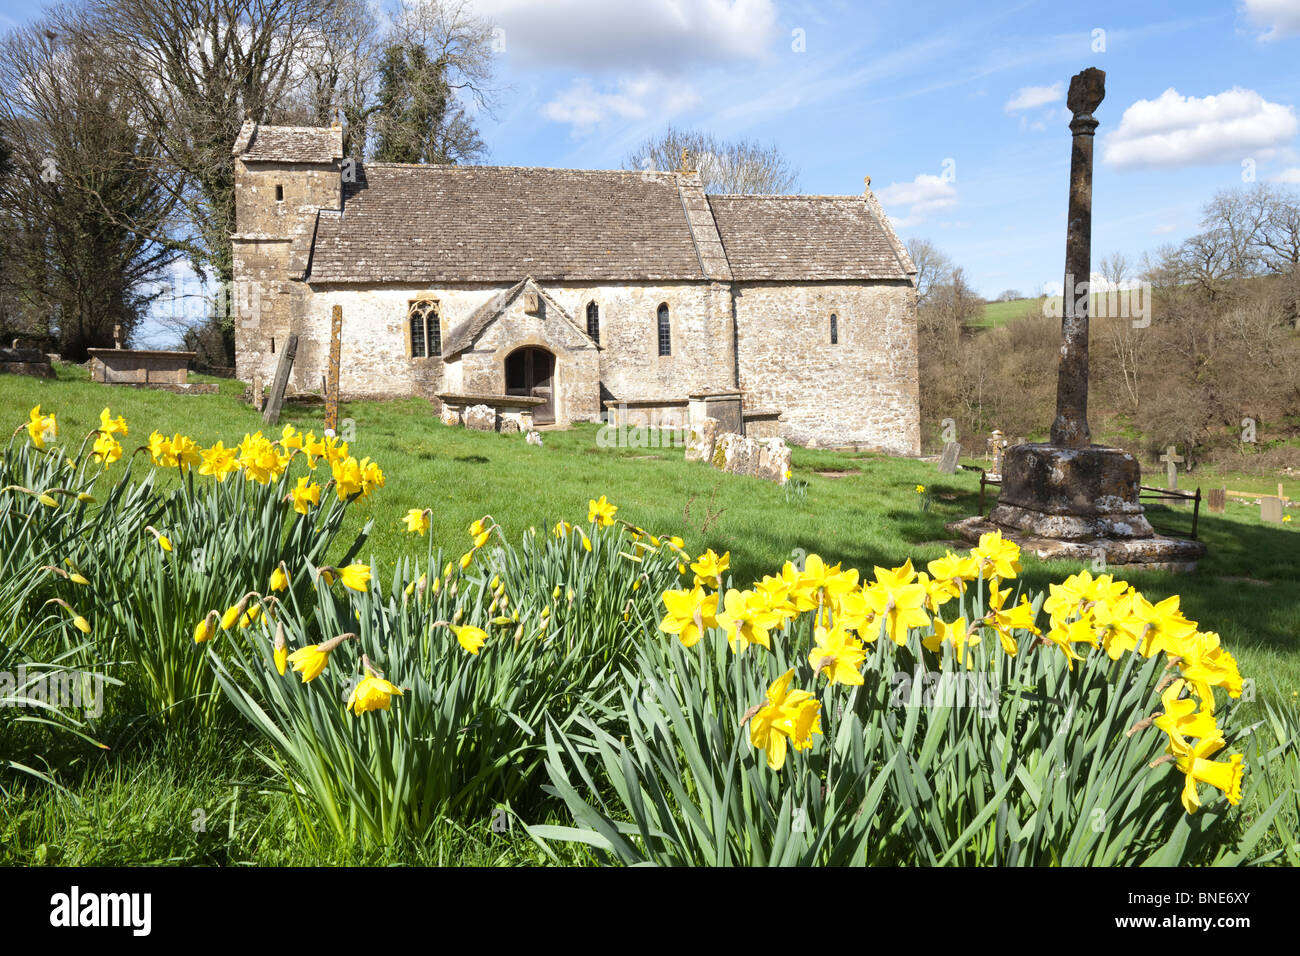 Primavera a Sassone la chiesa di St Michael nel villaggio Costwold di Duntisbourne Rouse, Gloucestershire Foto Stock